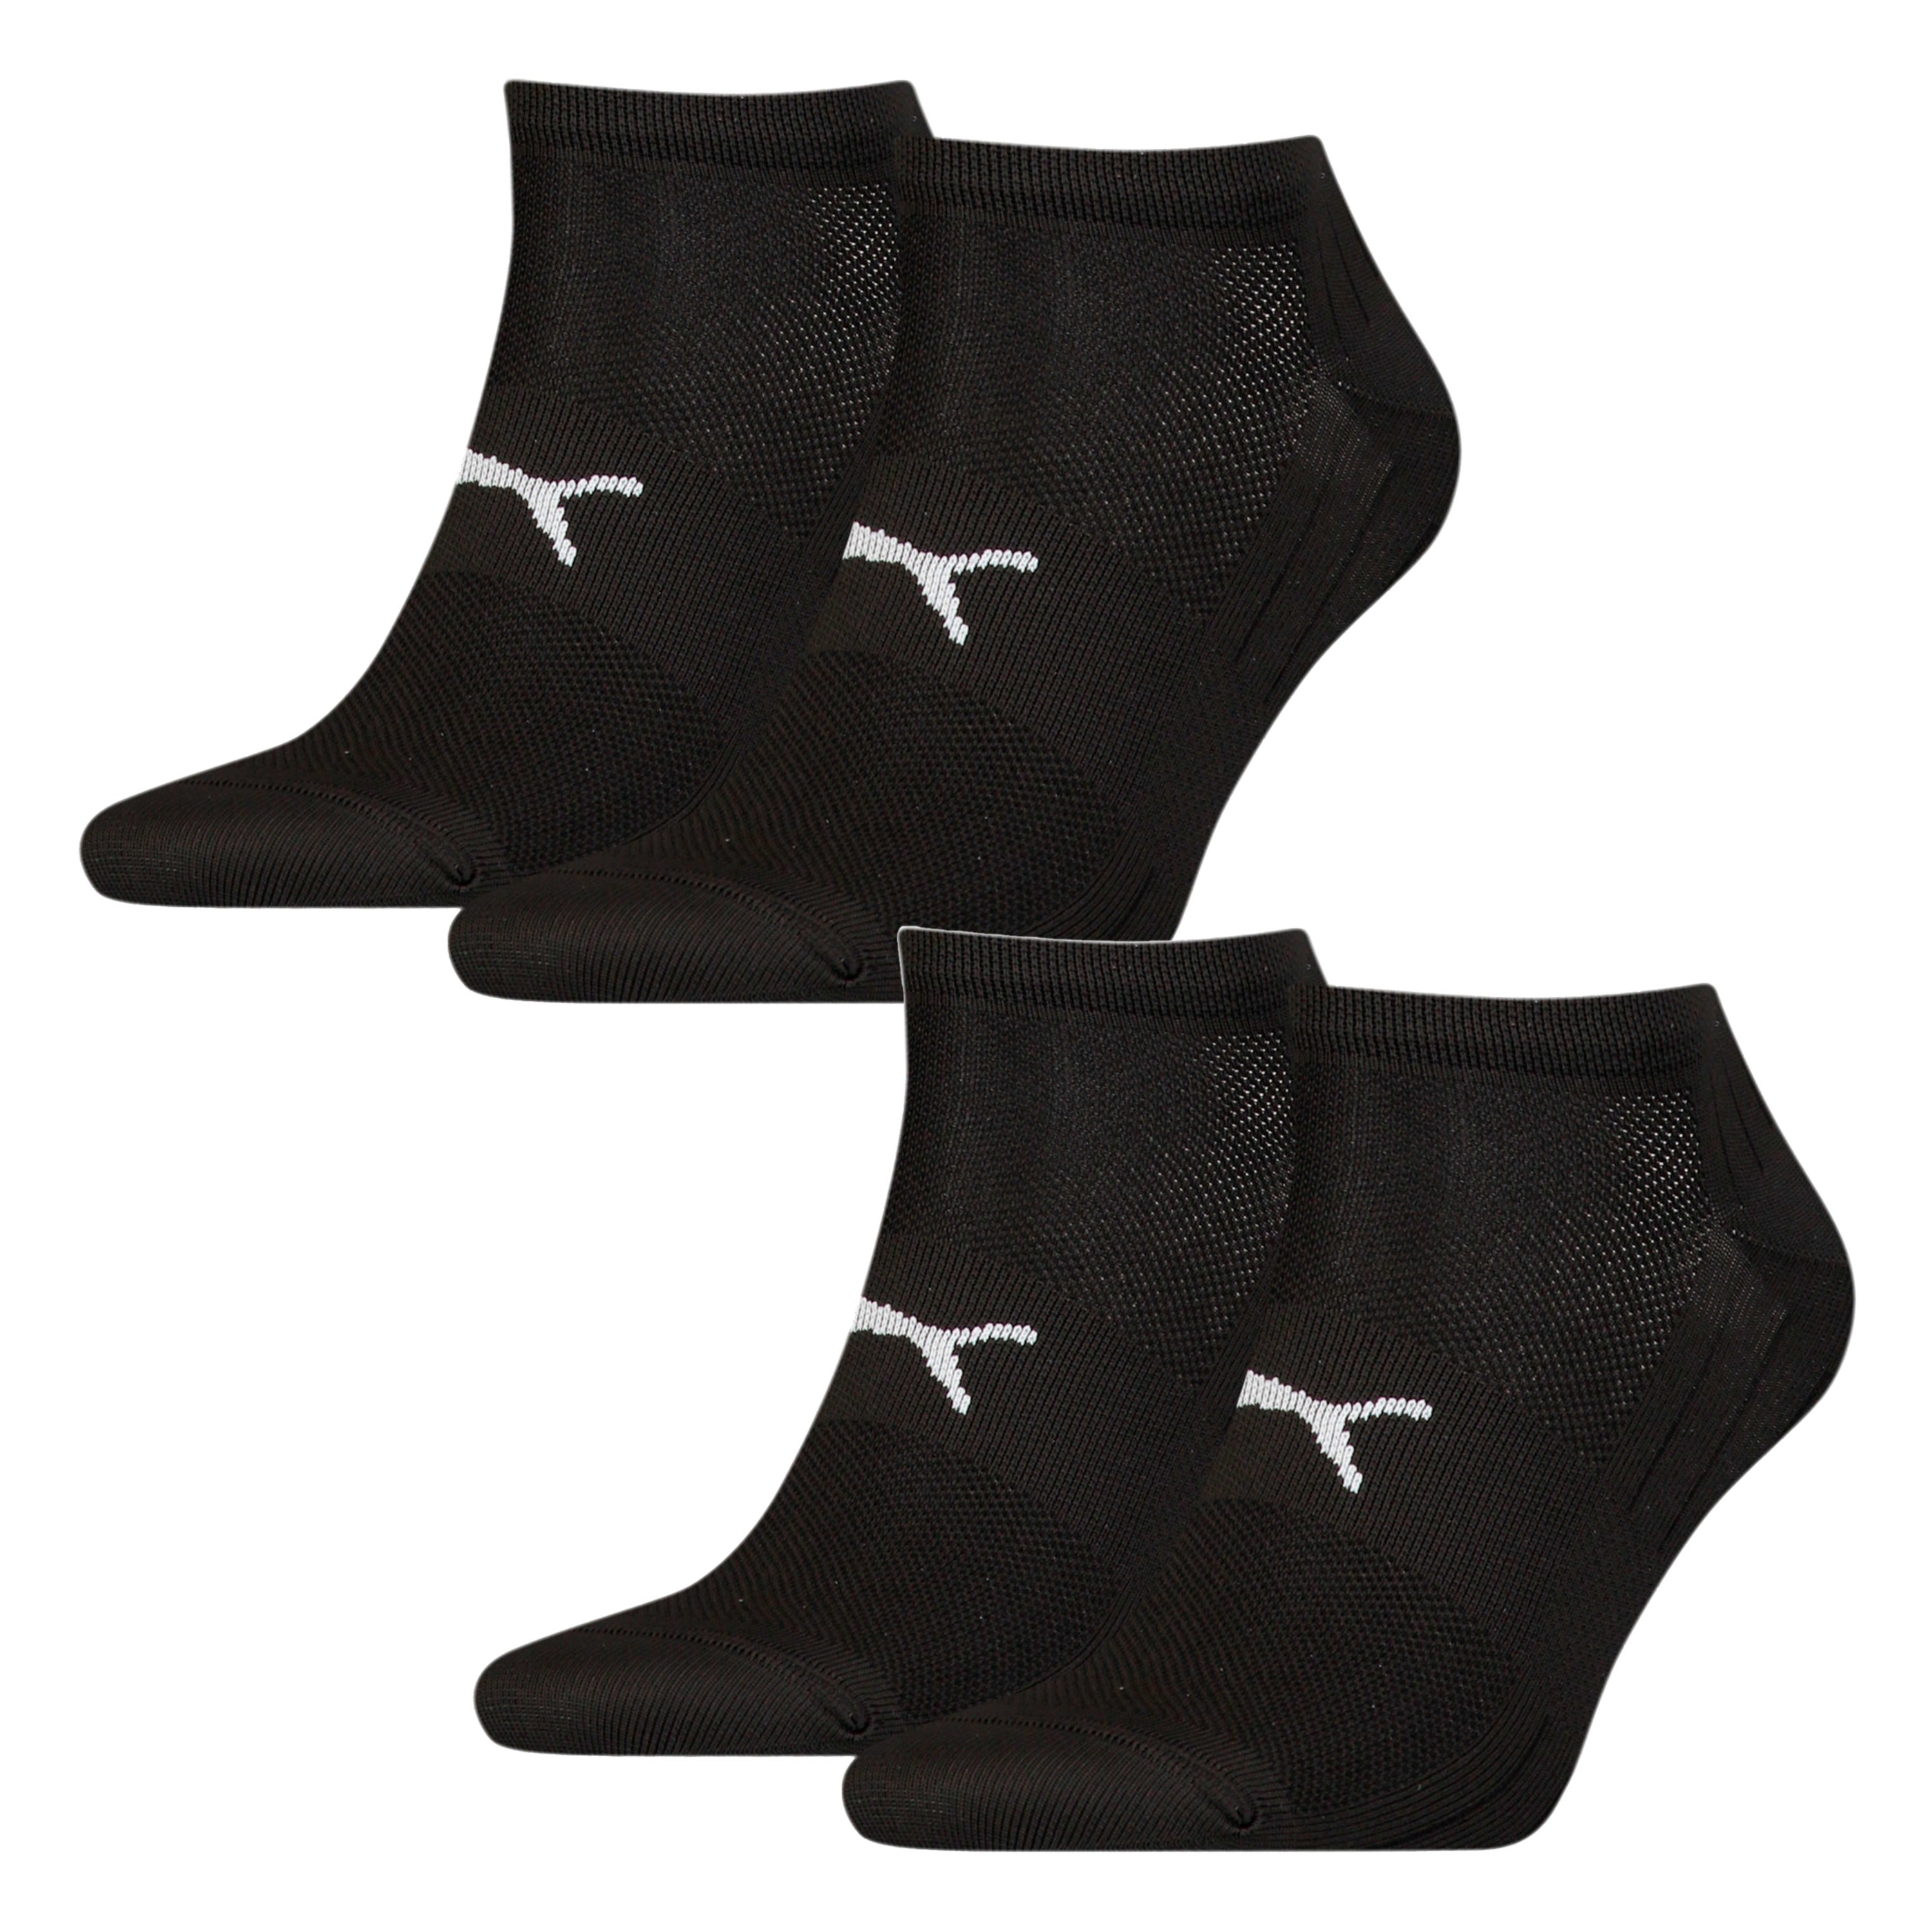 Pack de 2 pares de calcetines deportivos ligeros PUMA - negro - Pum